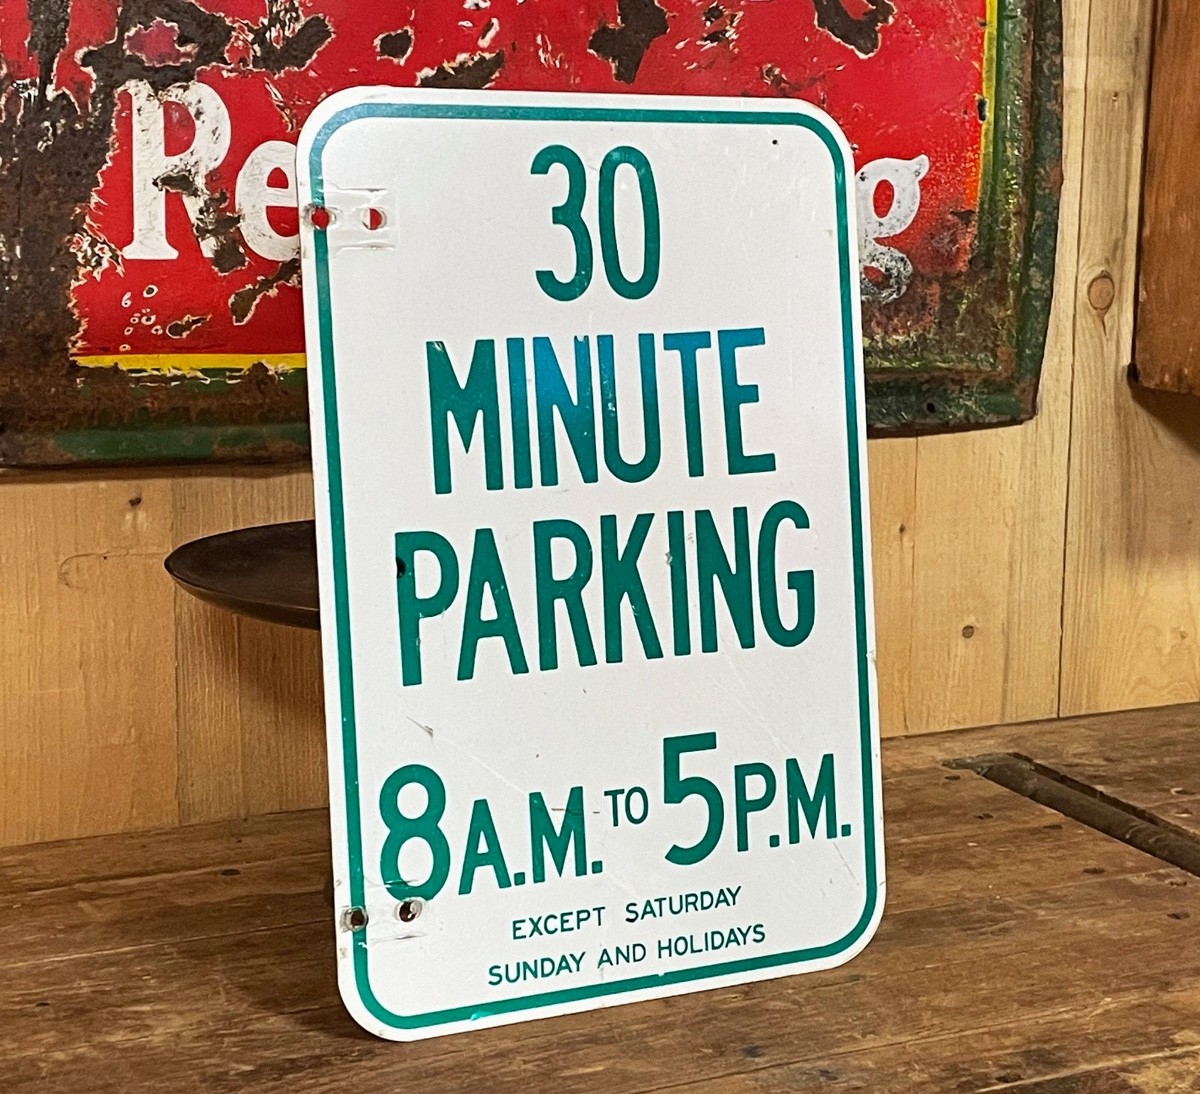 30 Minute Parking 8AM - 5PM Verkehrsschild